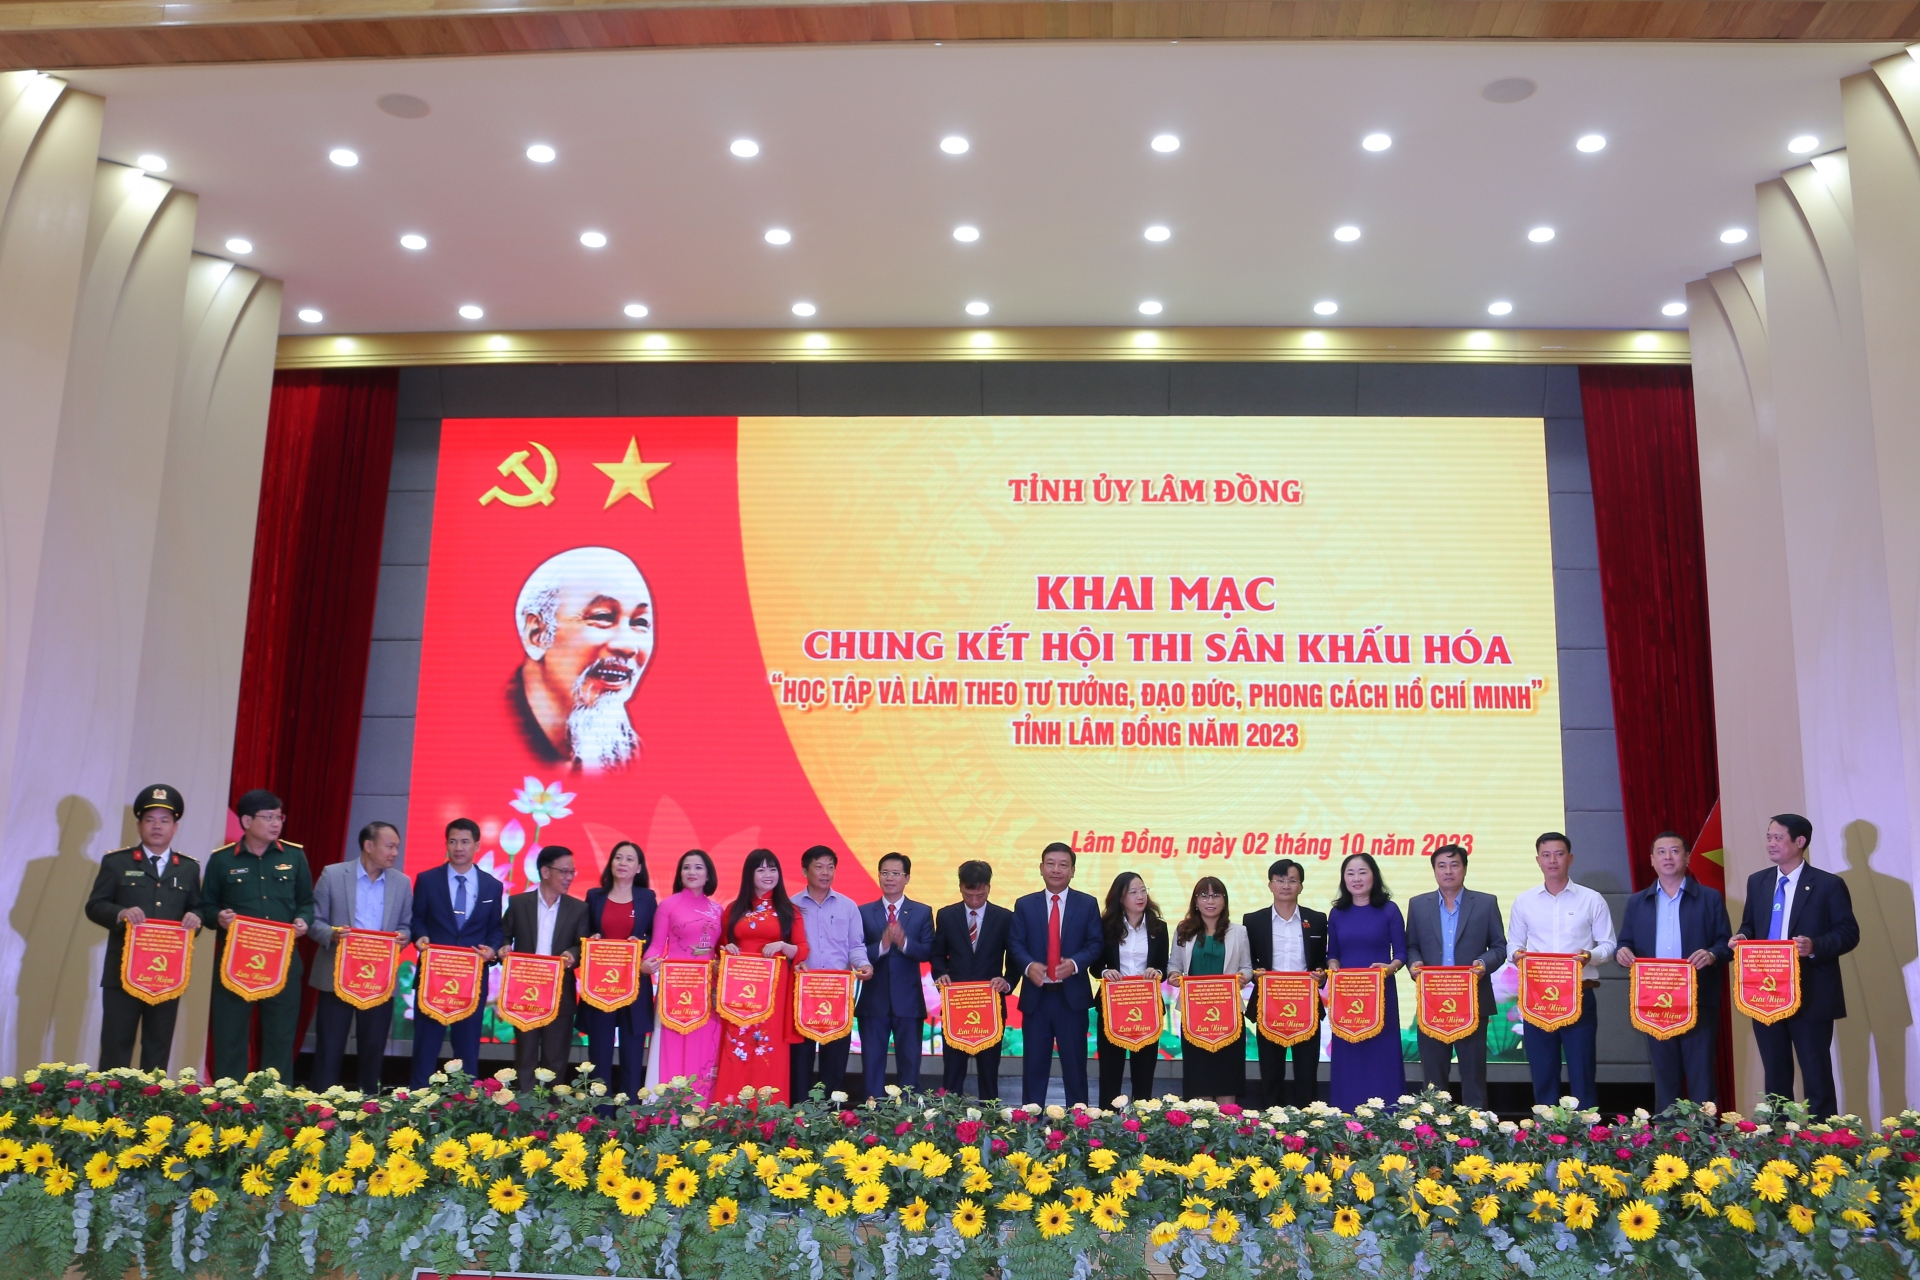 Khai mạc Chung kết Hội thi sân khấu hóa học tập và làm theo tư tưởng, đạo đức, phong cách Hồ Chí Minh tỉnh Lâm Đồng năm 2023